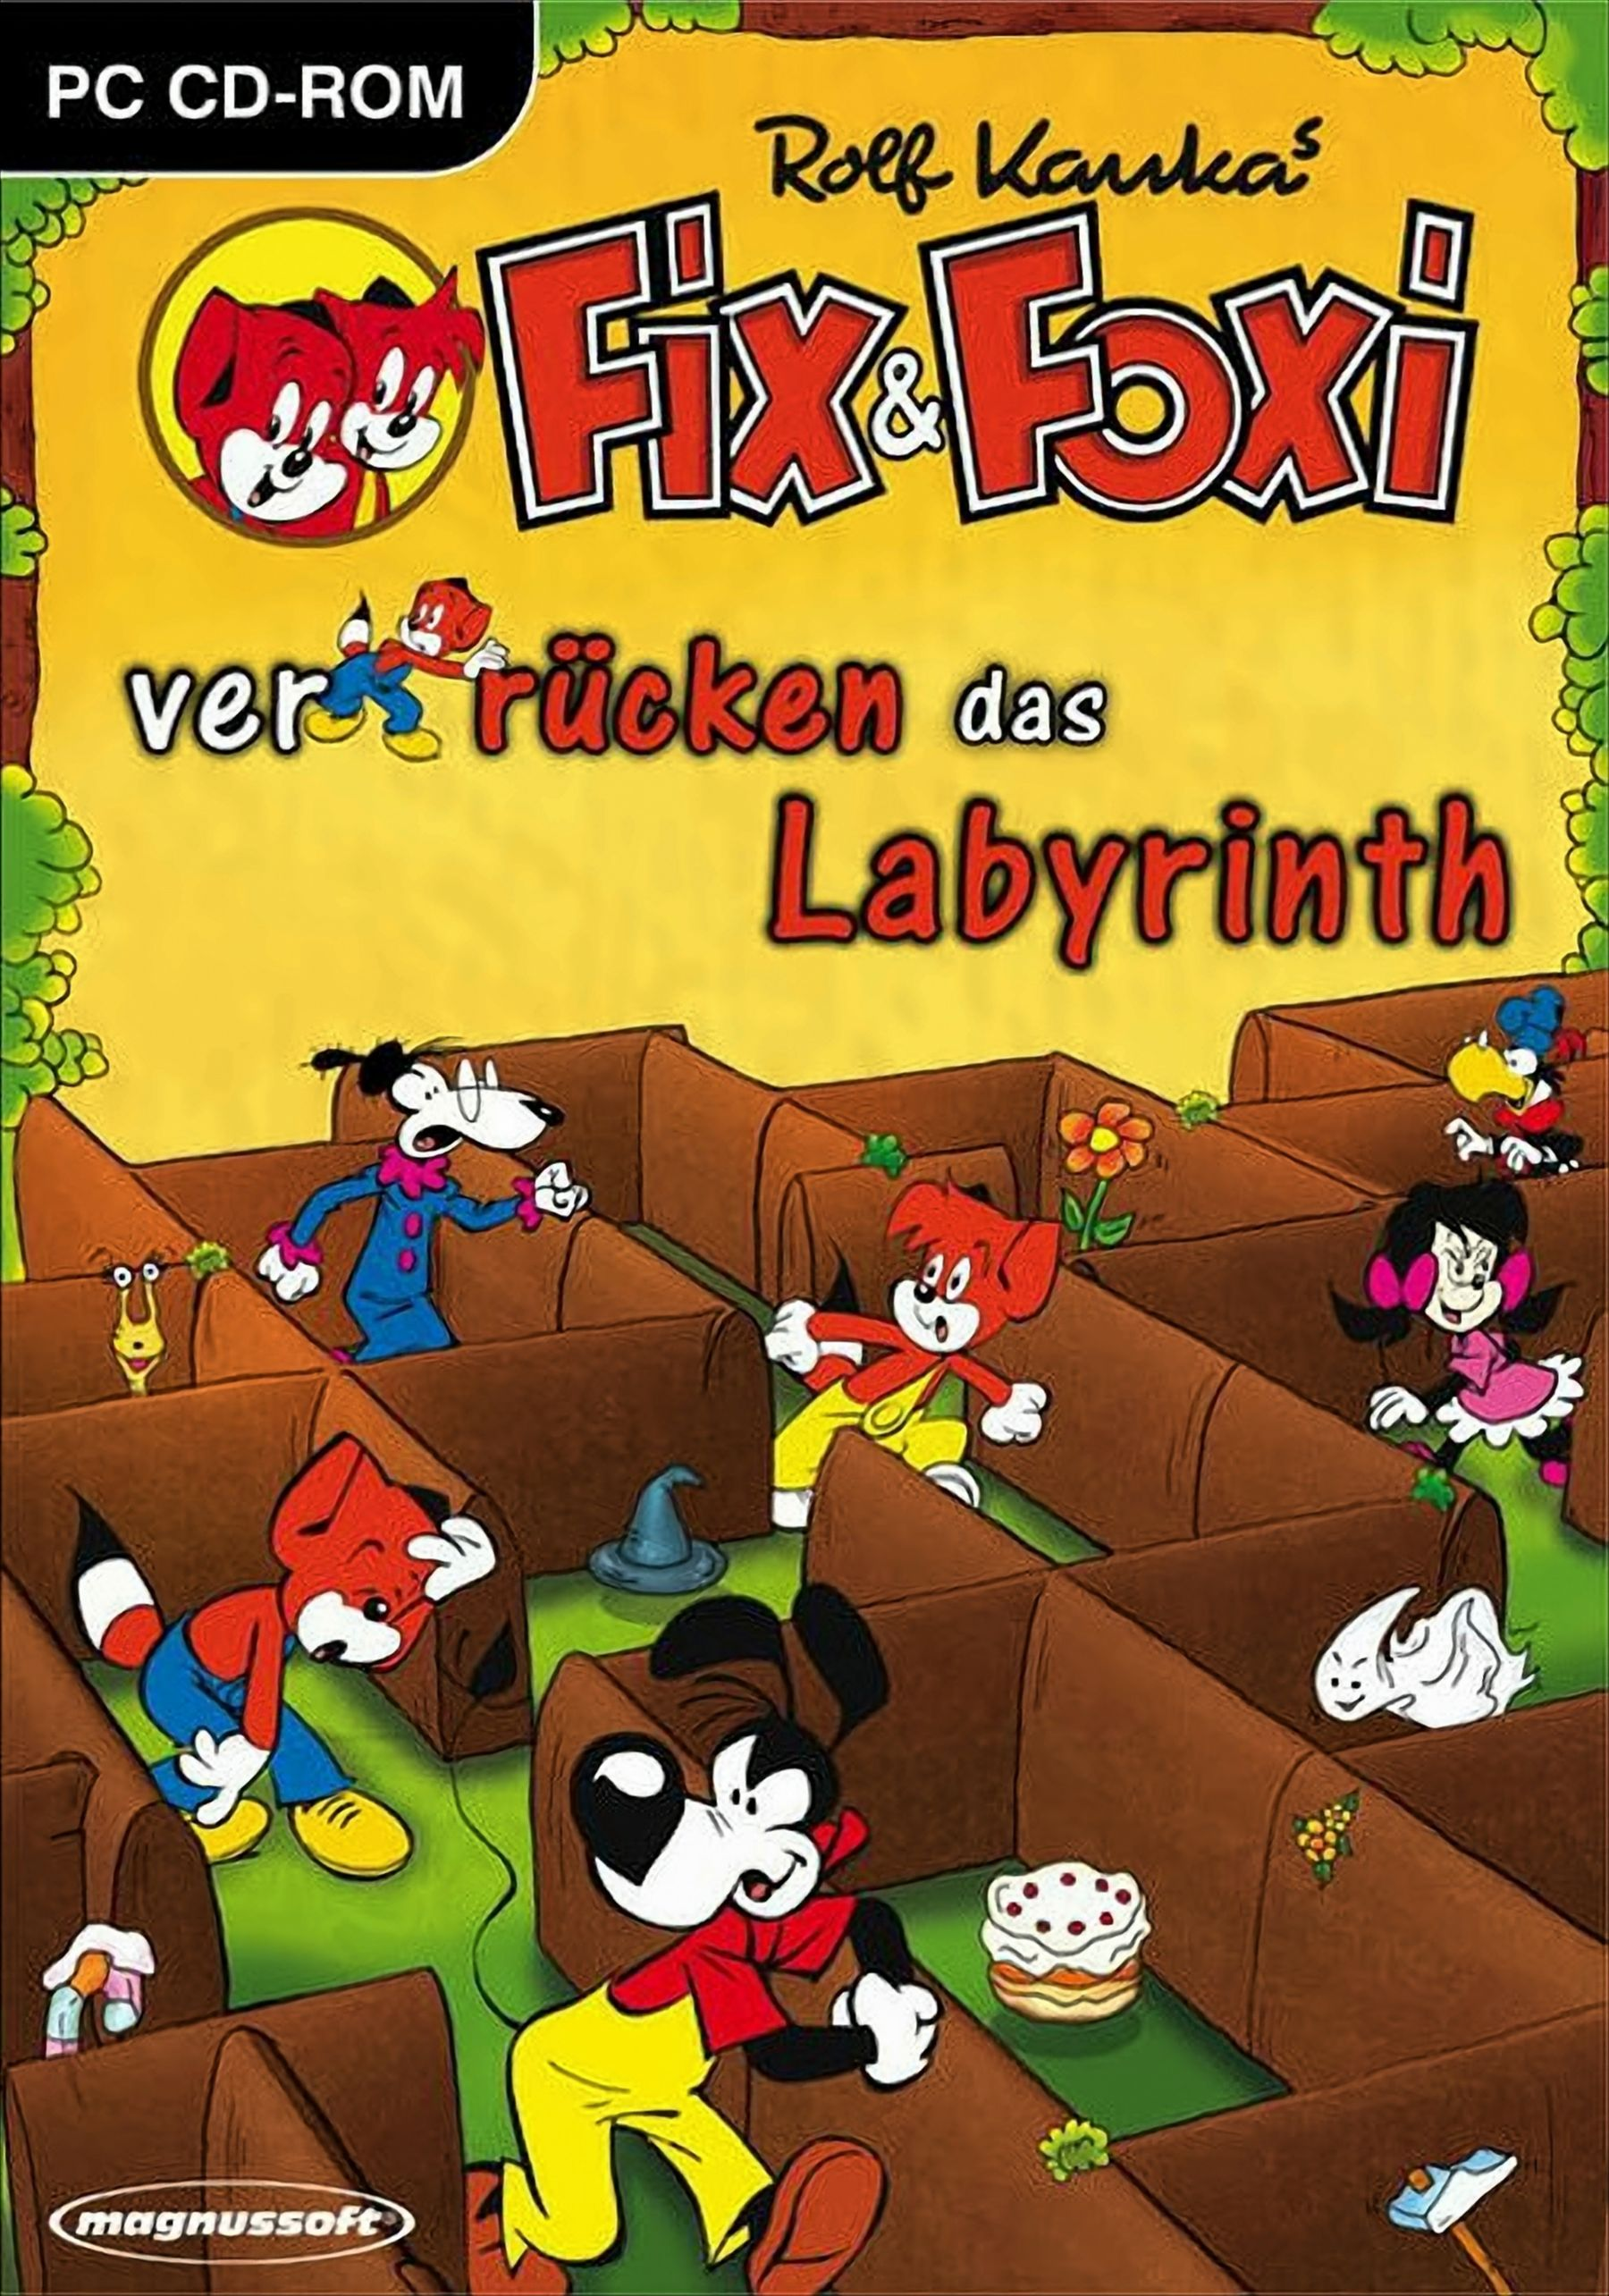 verrücken das & Labyrinth [PC] Fix - Foxi